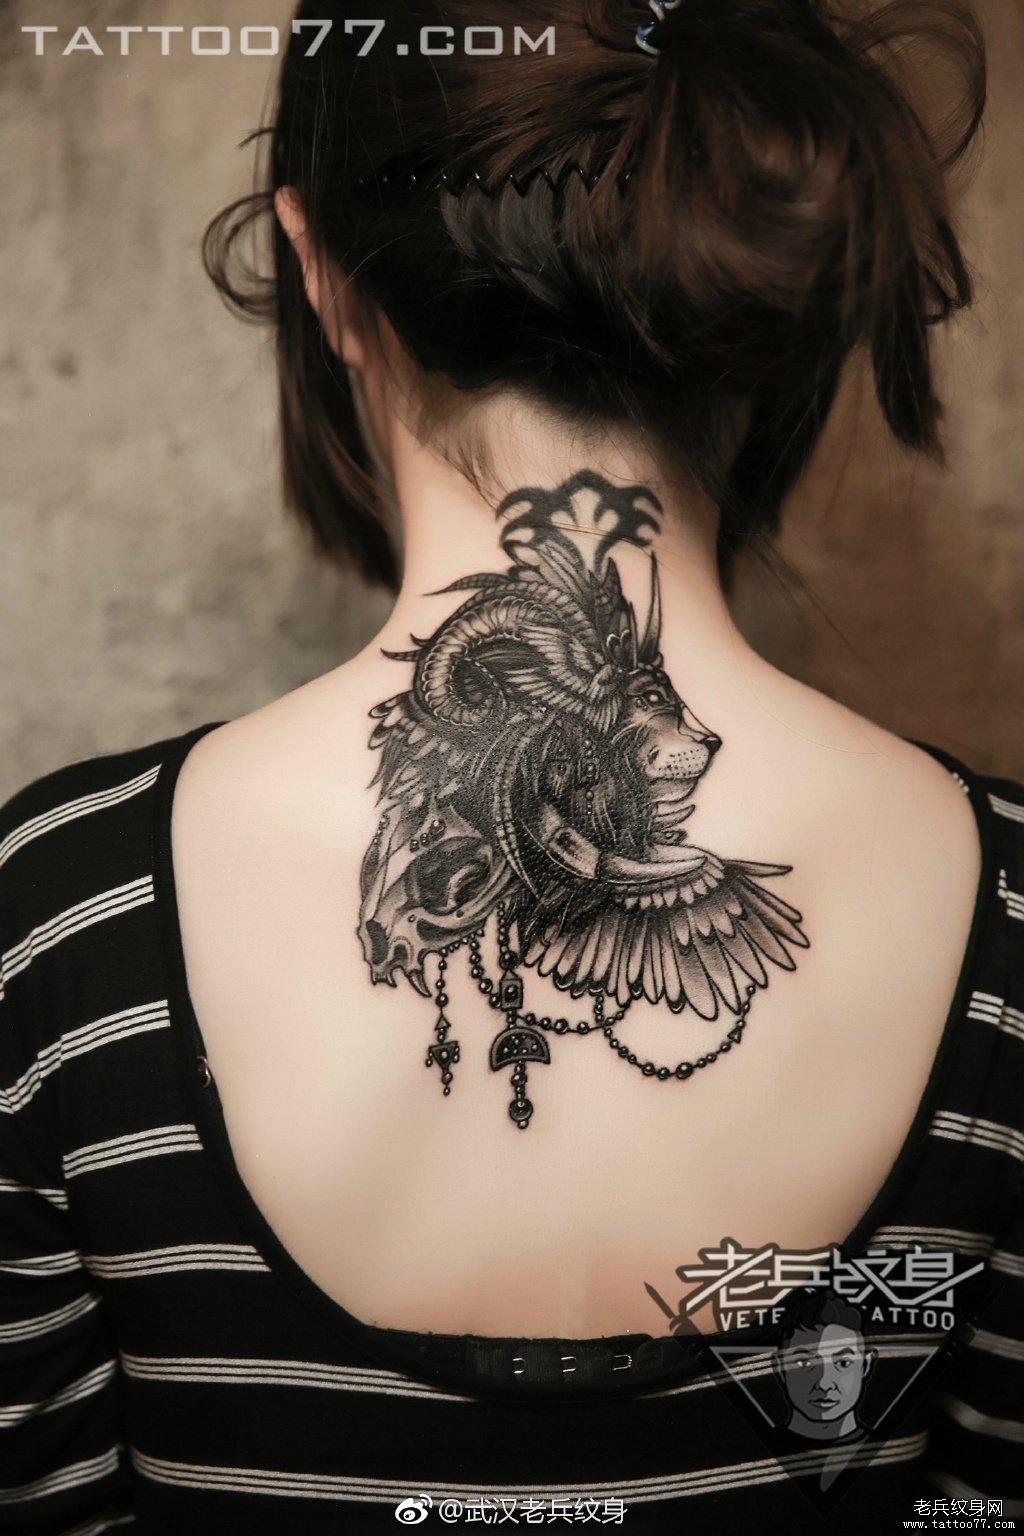 武汉纹身师打造的颈部狮子纹身图案作品